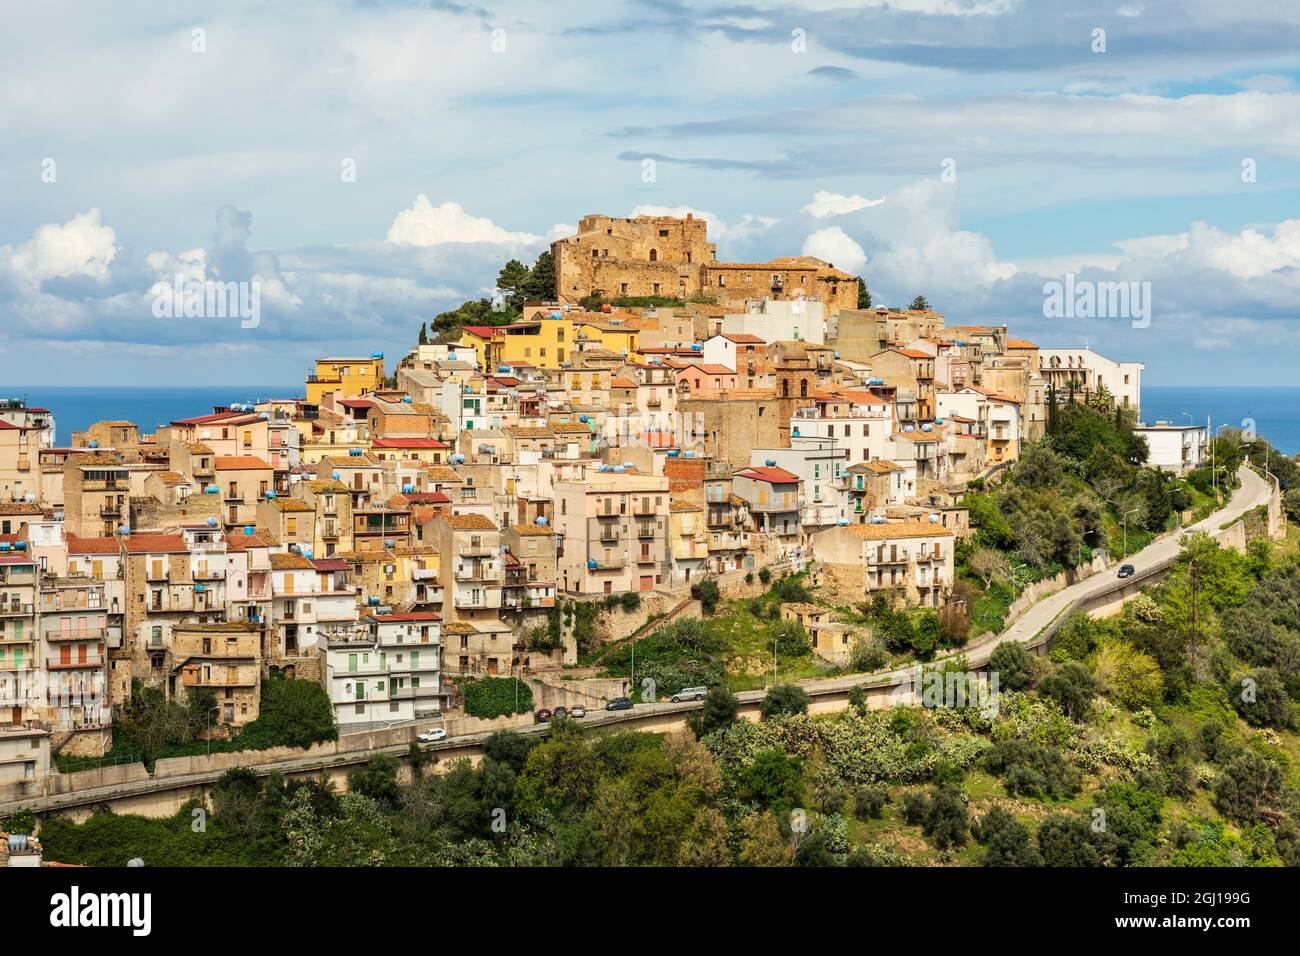 Italia, Sicilia, Provincia Di Messina, Caronia. La cittadina medievale di Caronia, costruita intorno ad un castello normanno. Foto Stock